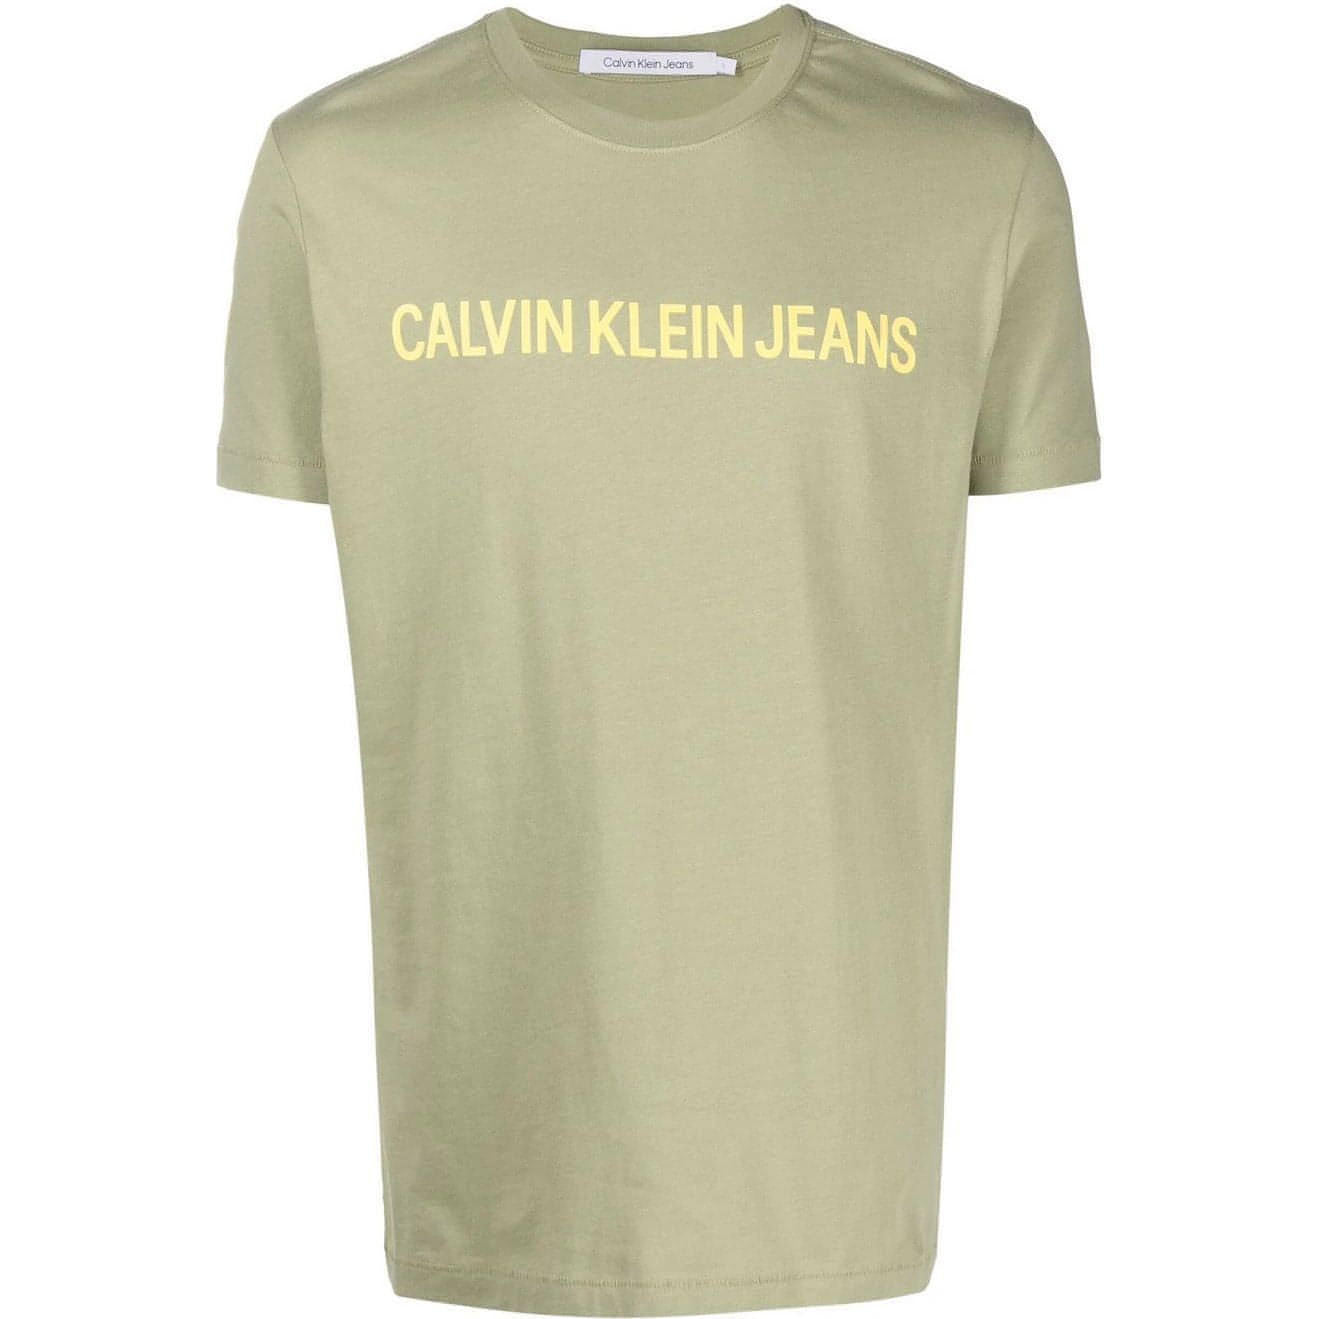 CALVIN KLEIN JEANS vyriški žali marškinėliai